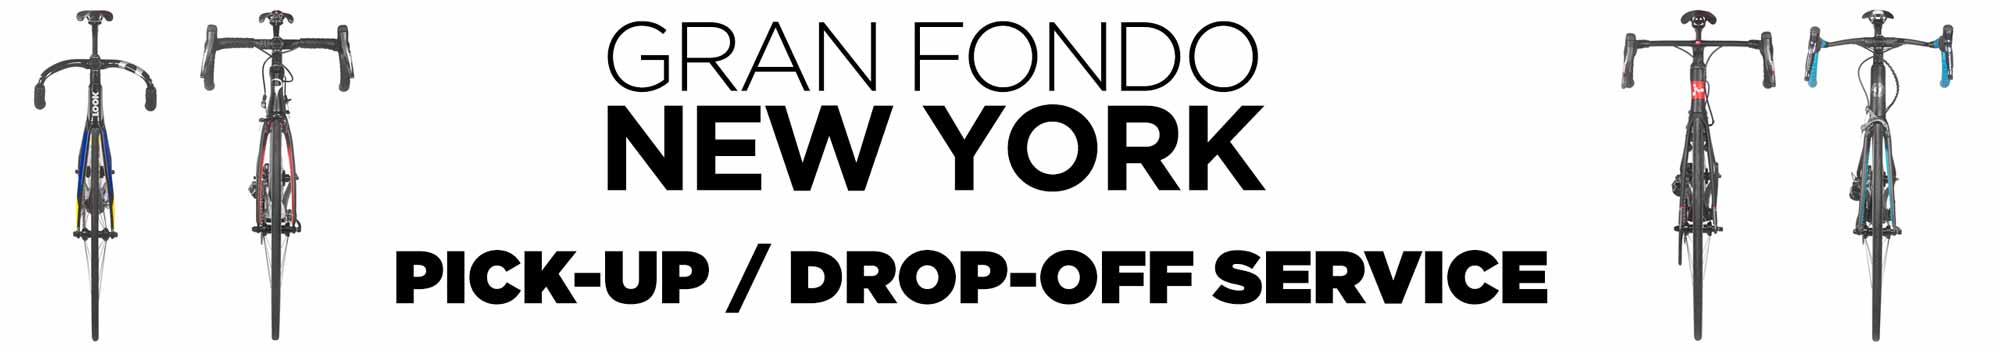 Gran Fondo NY Pick-up / Drop-off Service